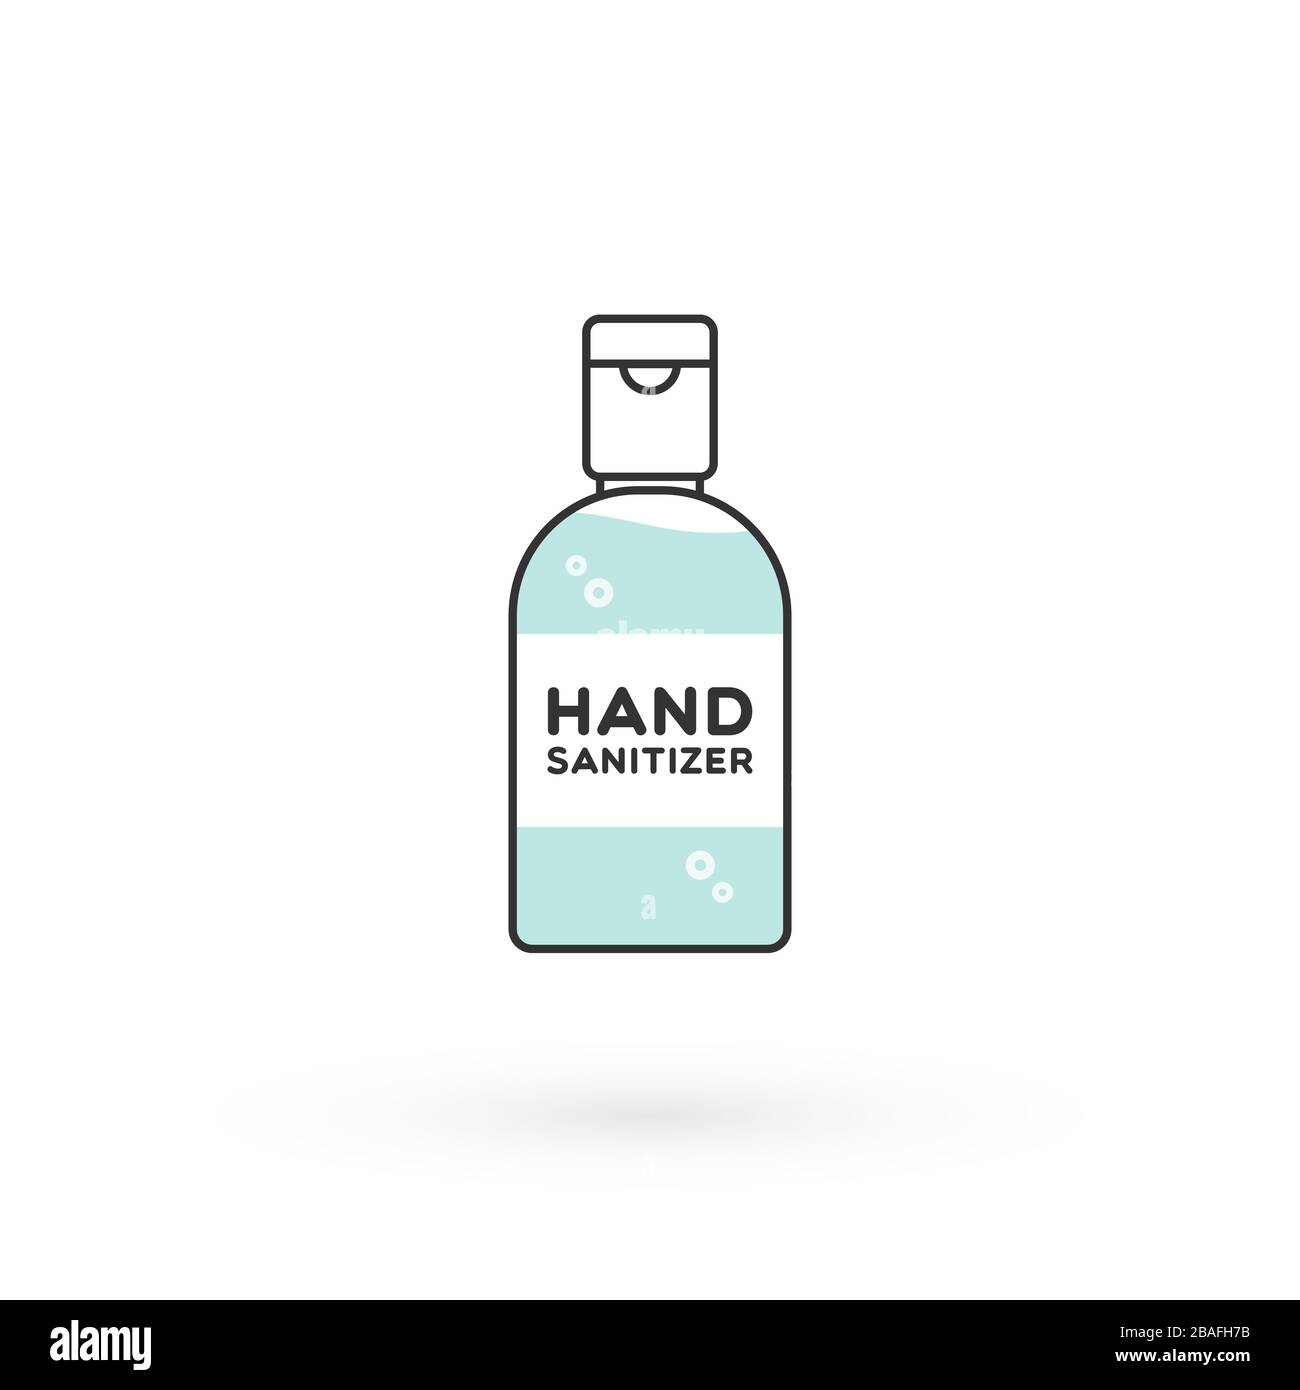 Handdesinfizierflasche isoliert. Waschalkoholgel gegen Viren, Bakterien, Grippe und Coronavirus. Wasserloser Handreiniger. Taschenformat. Händewaschen Stock Vektor